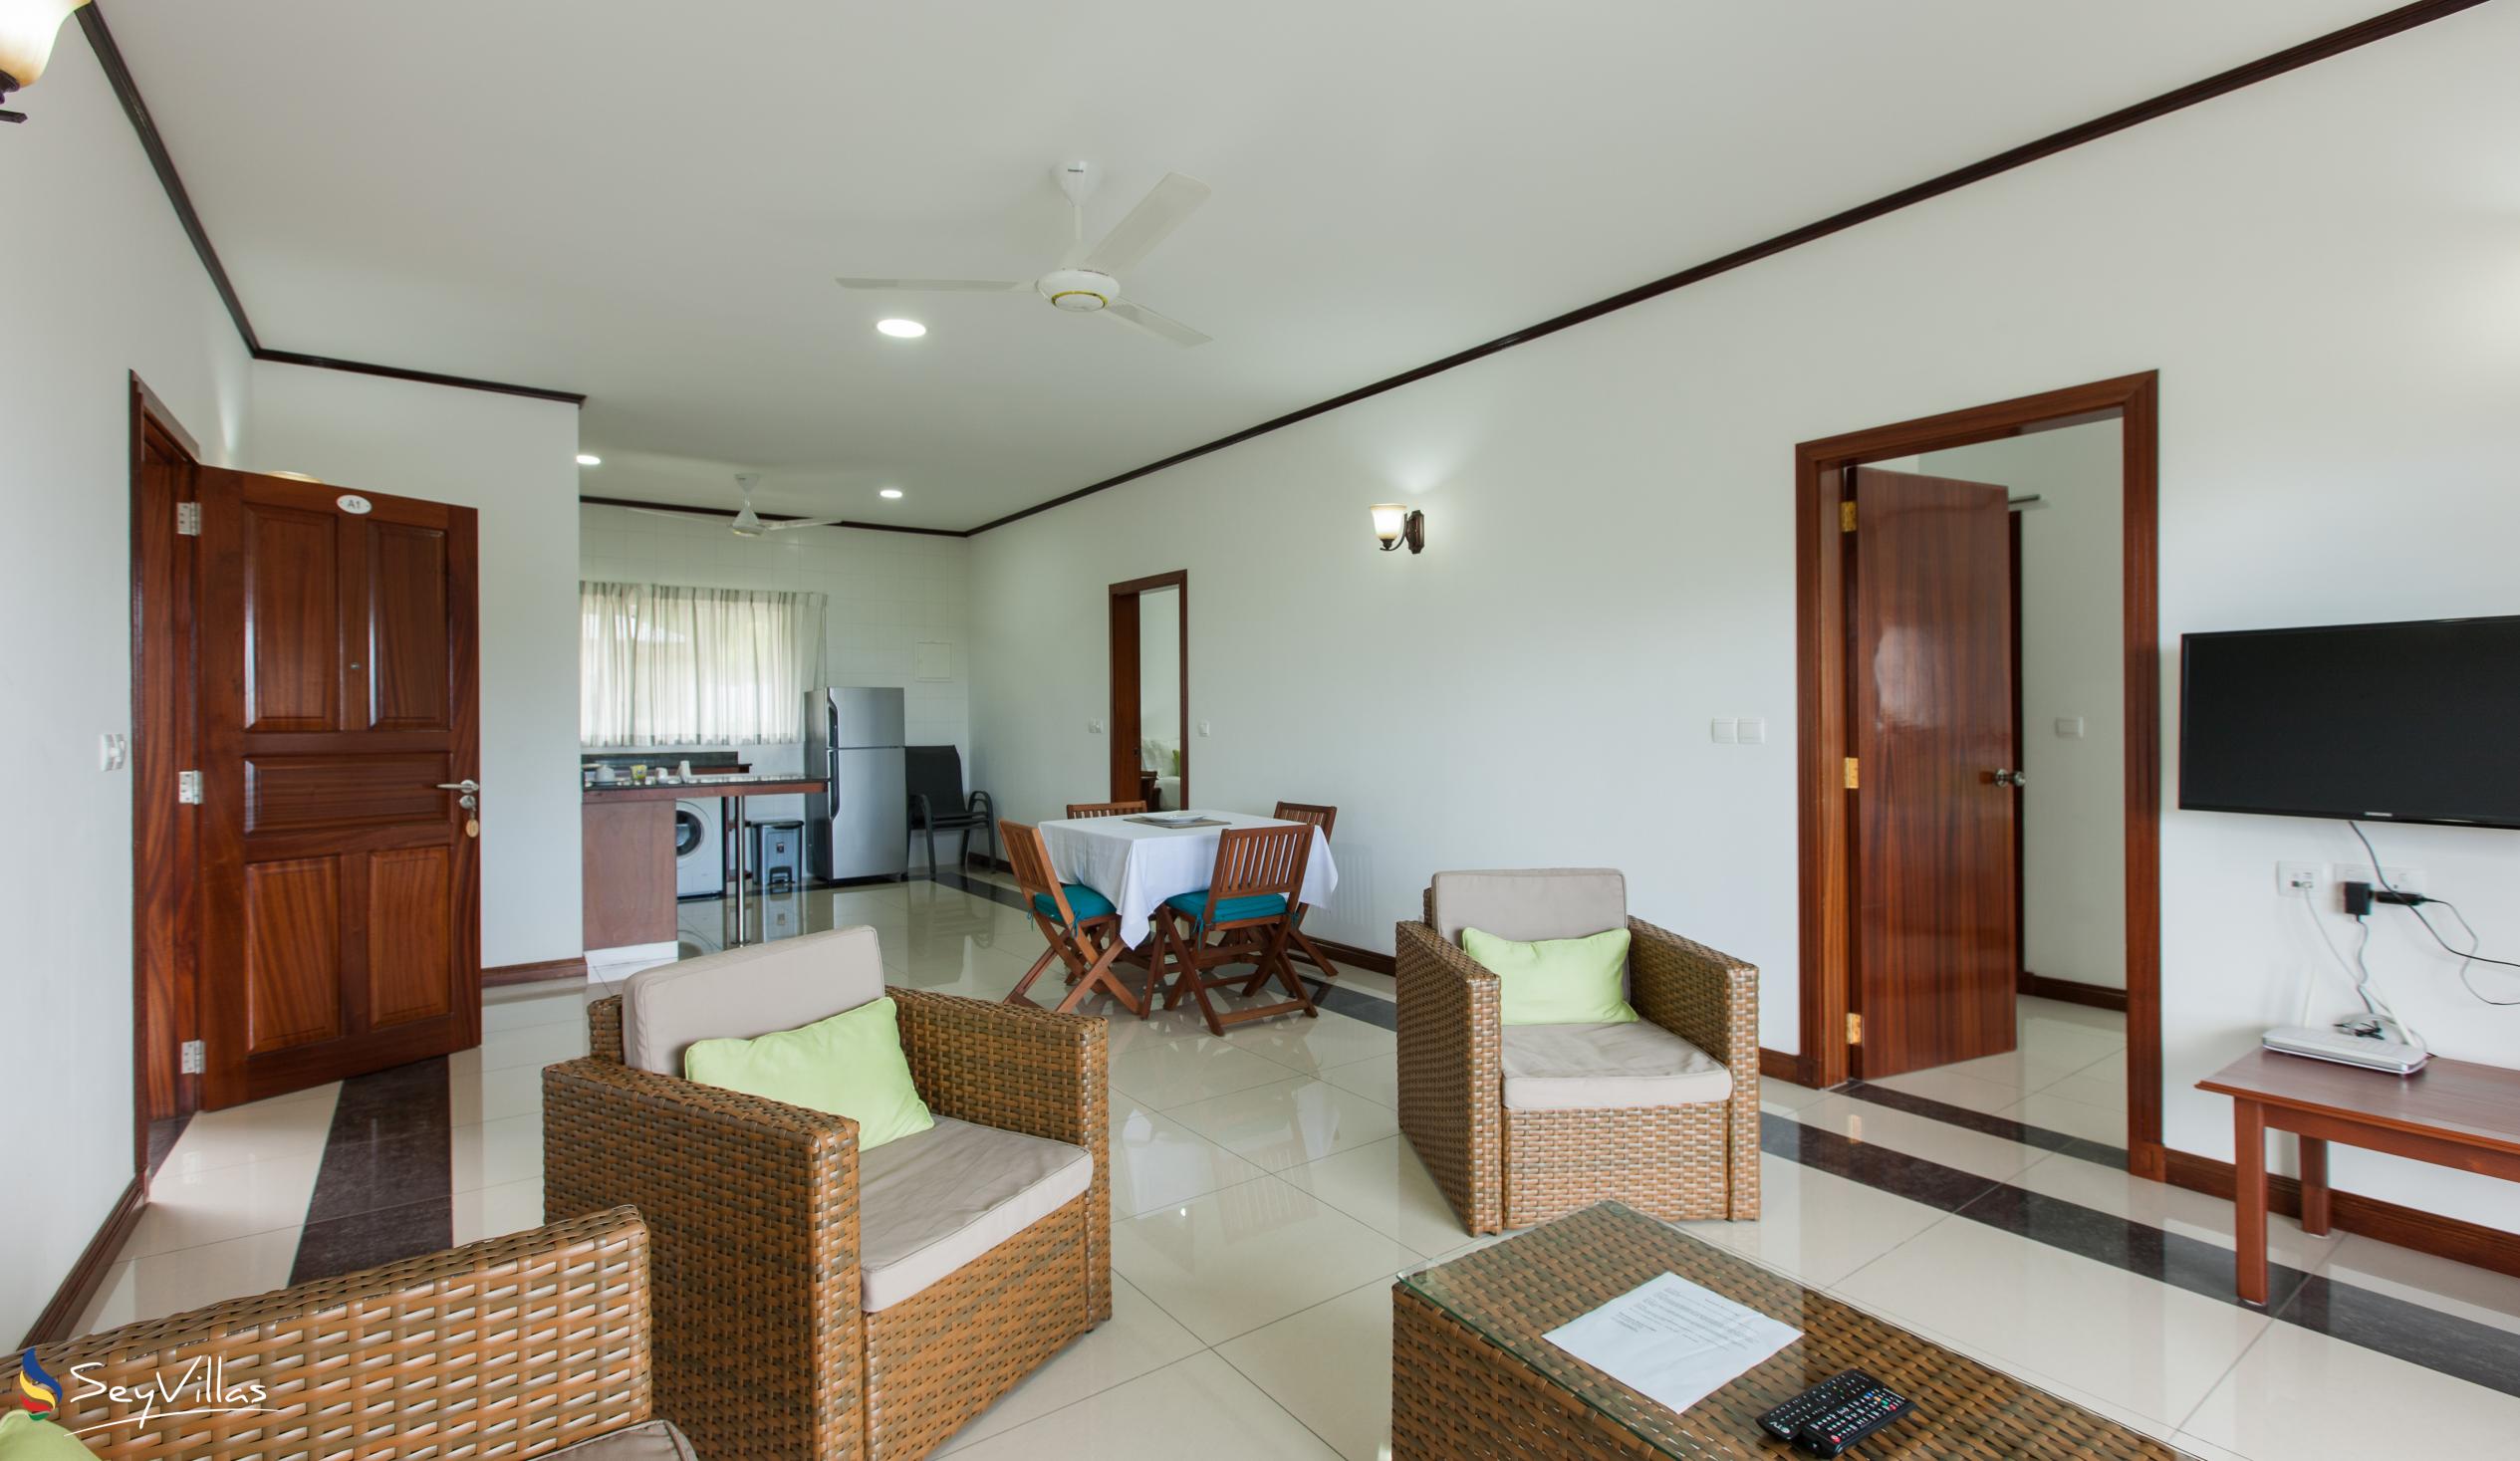 Foto 51: Bambous River Lodge - Appartement 2 chambres - Mahé (Seychelles)